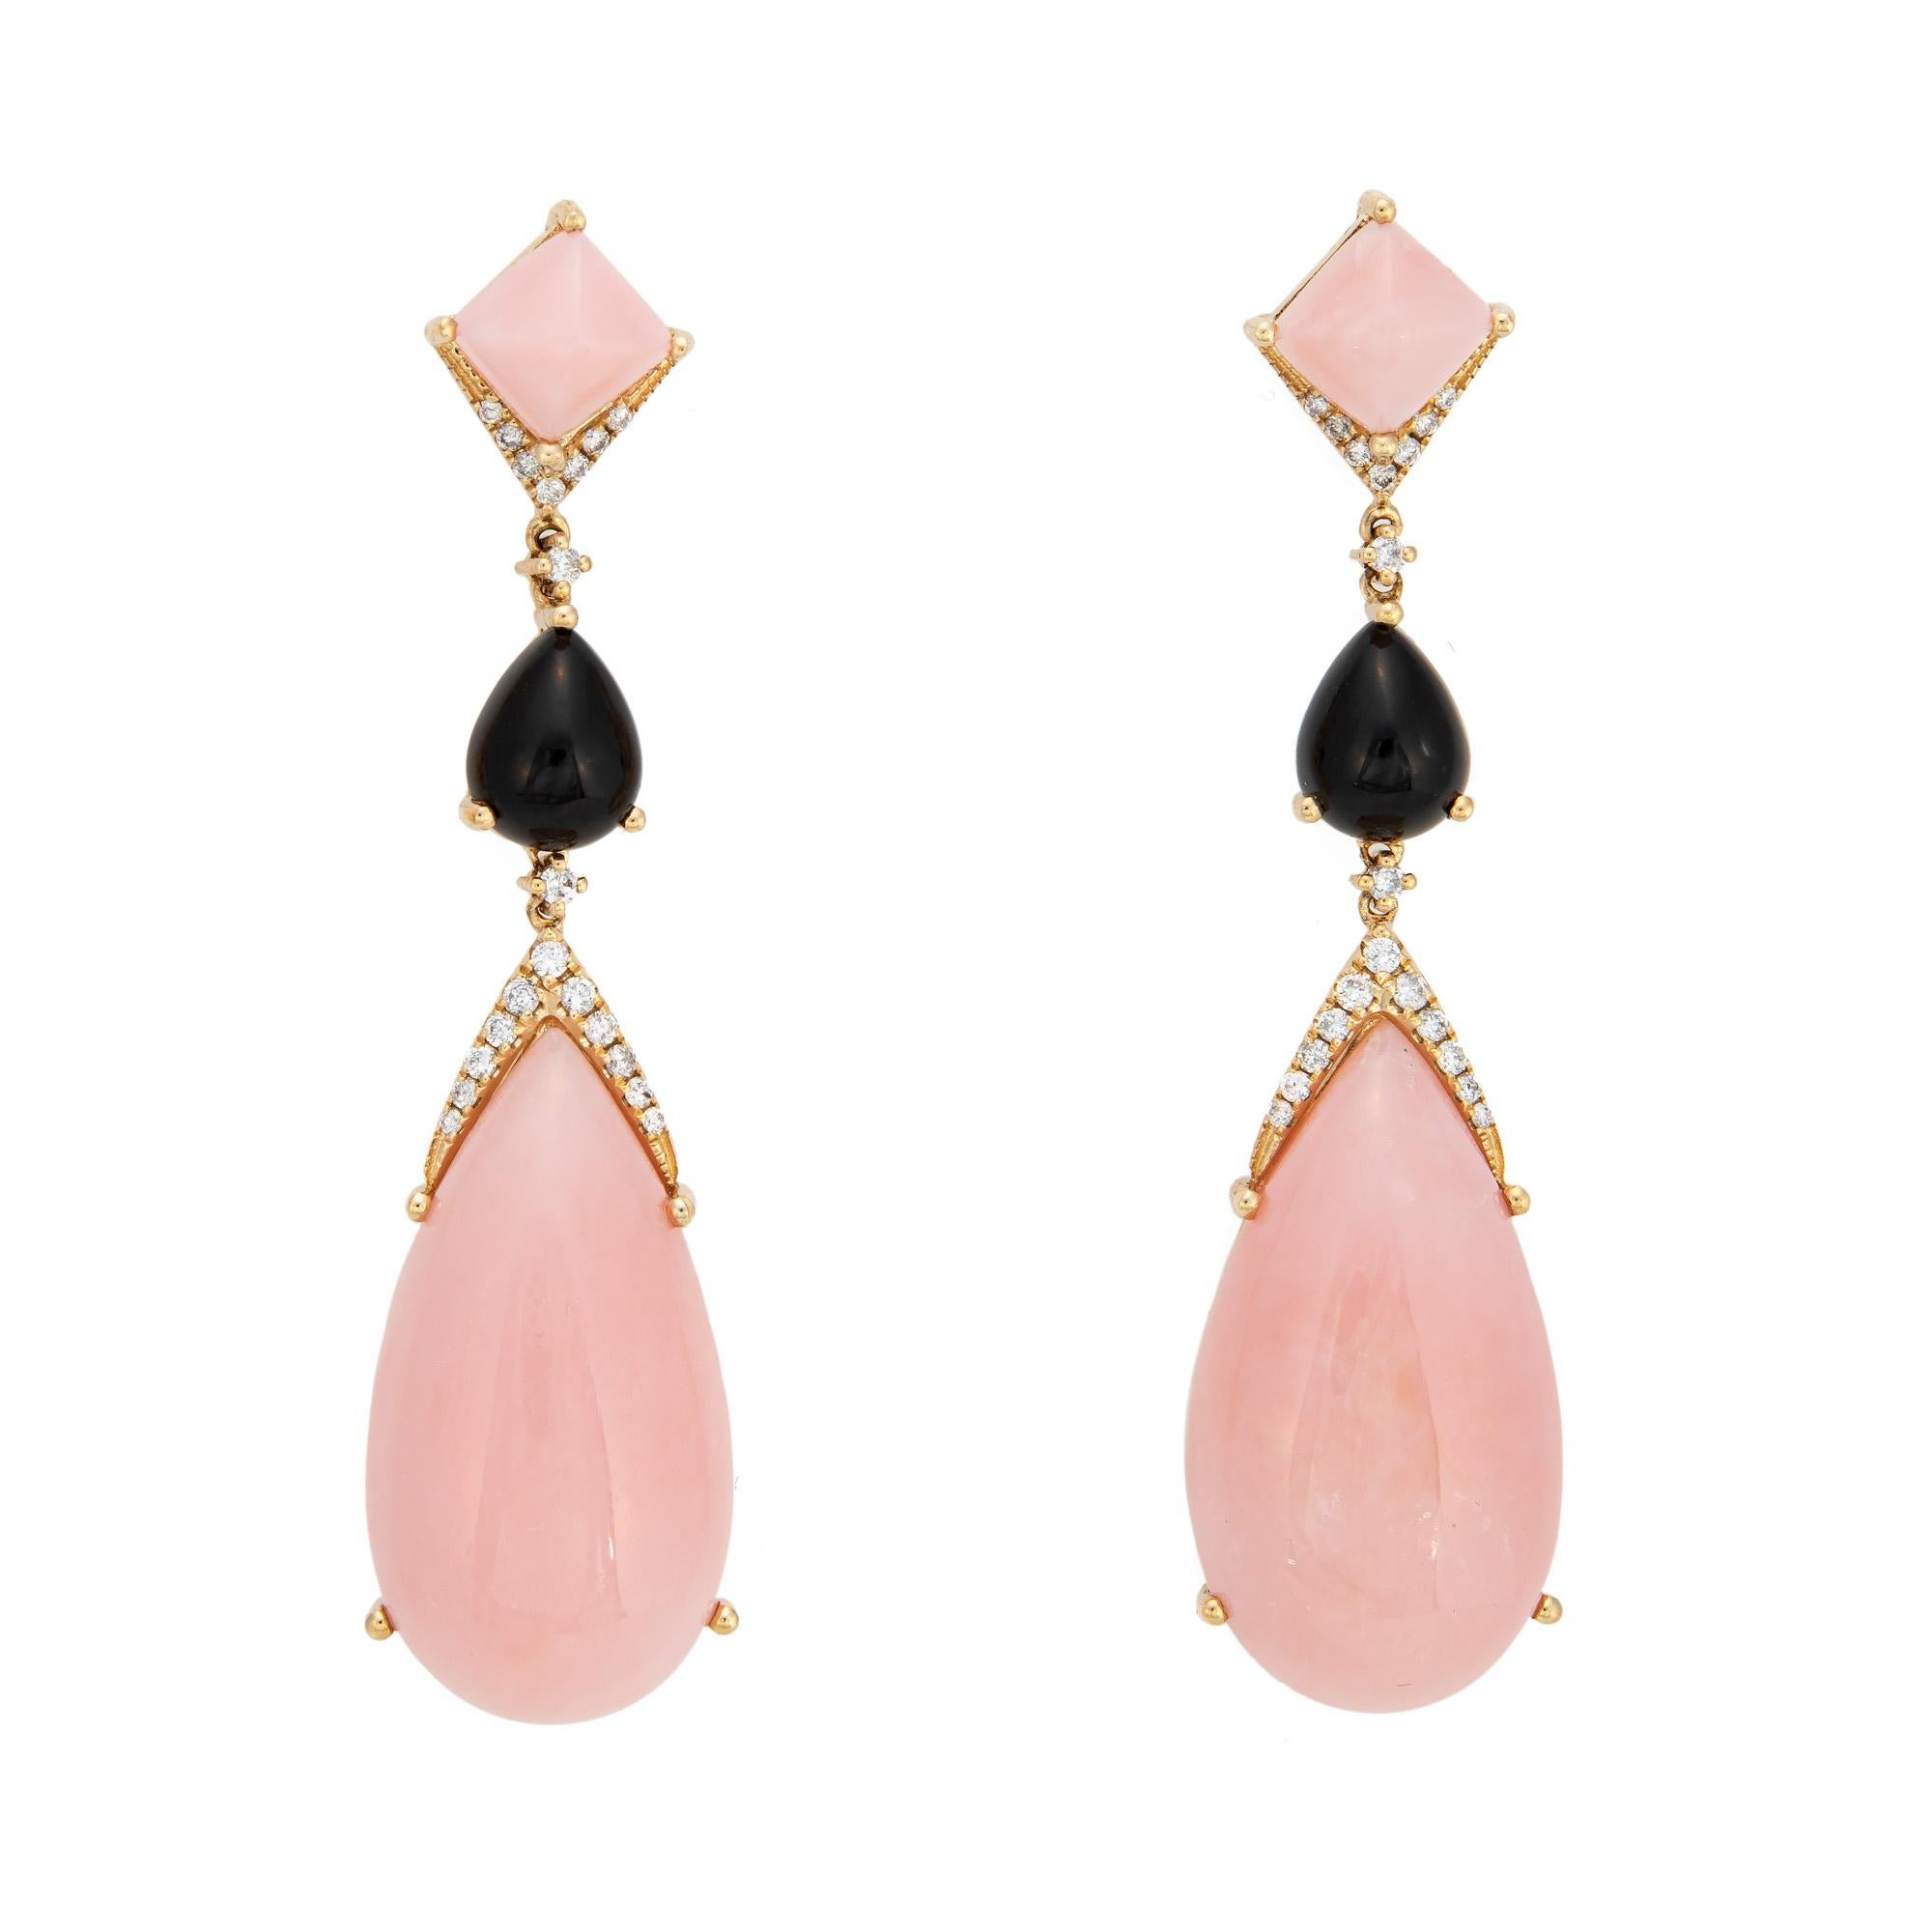 Pear Cut Pink Opal Onyx Diamond Earrings Long Drops 14k Yellow Gold Estate Jewelry For Sale